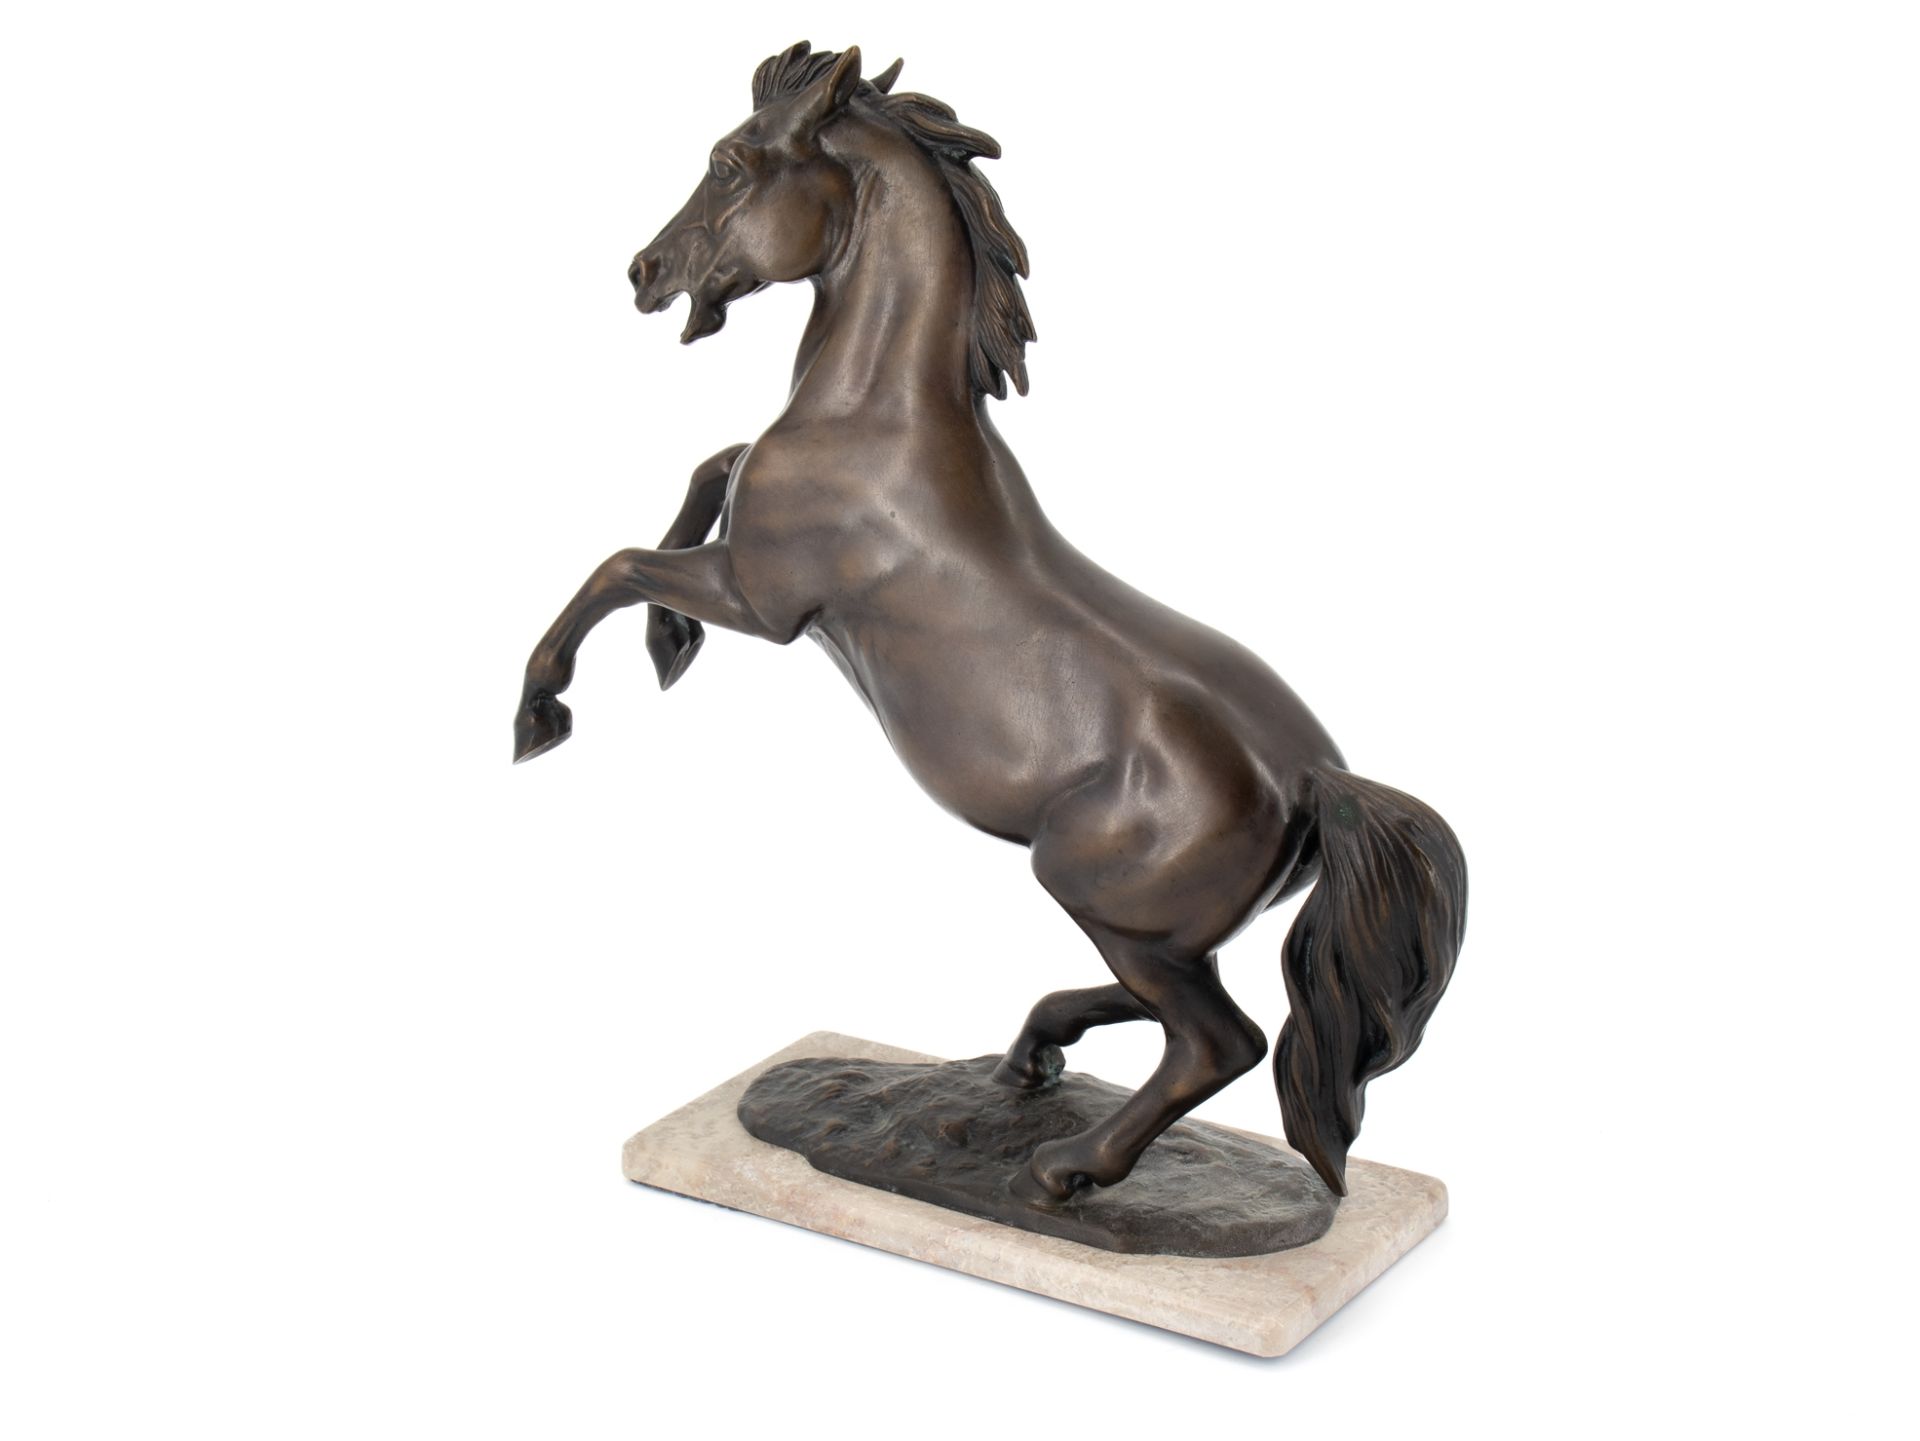 Diller Helmut (1911 - 1984), Bronzeskulptur "Steigendes Pferd" - Bild 3 aus 10